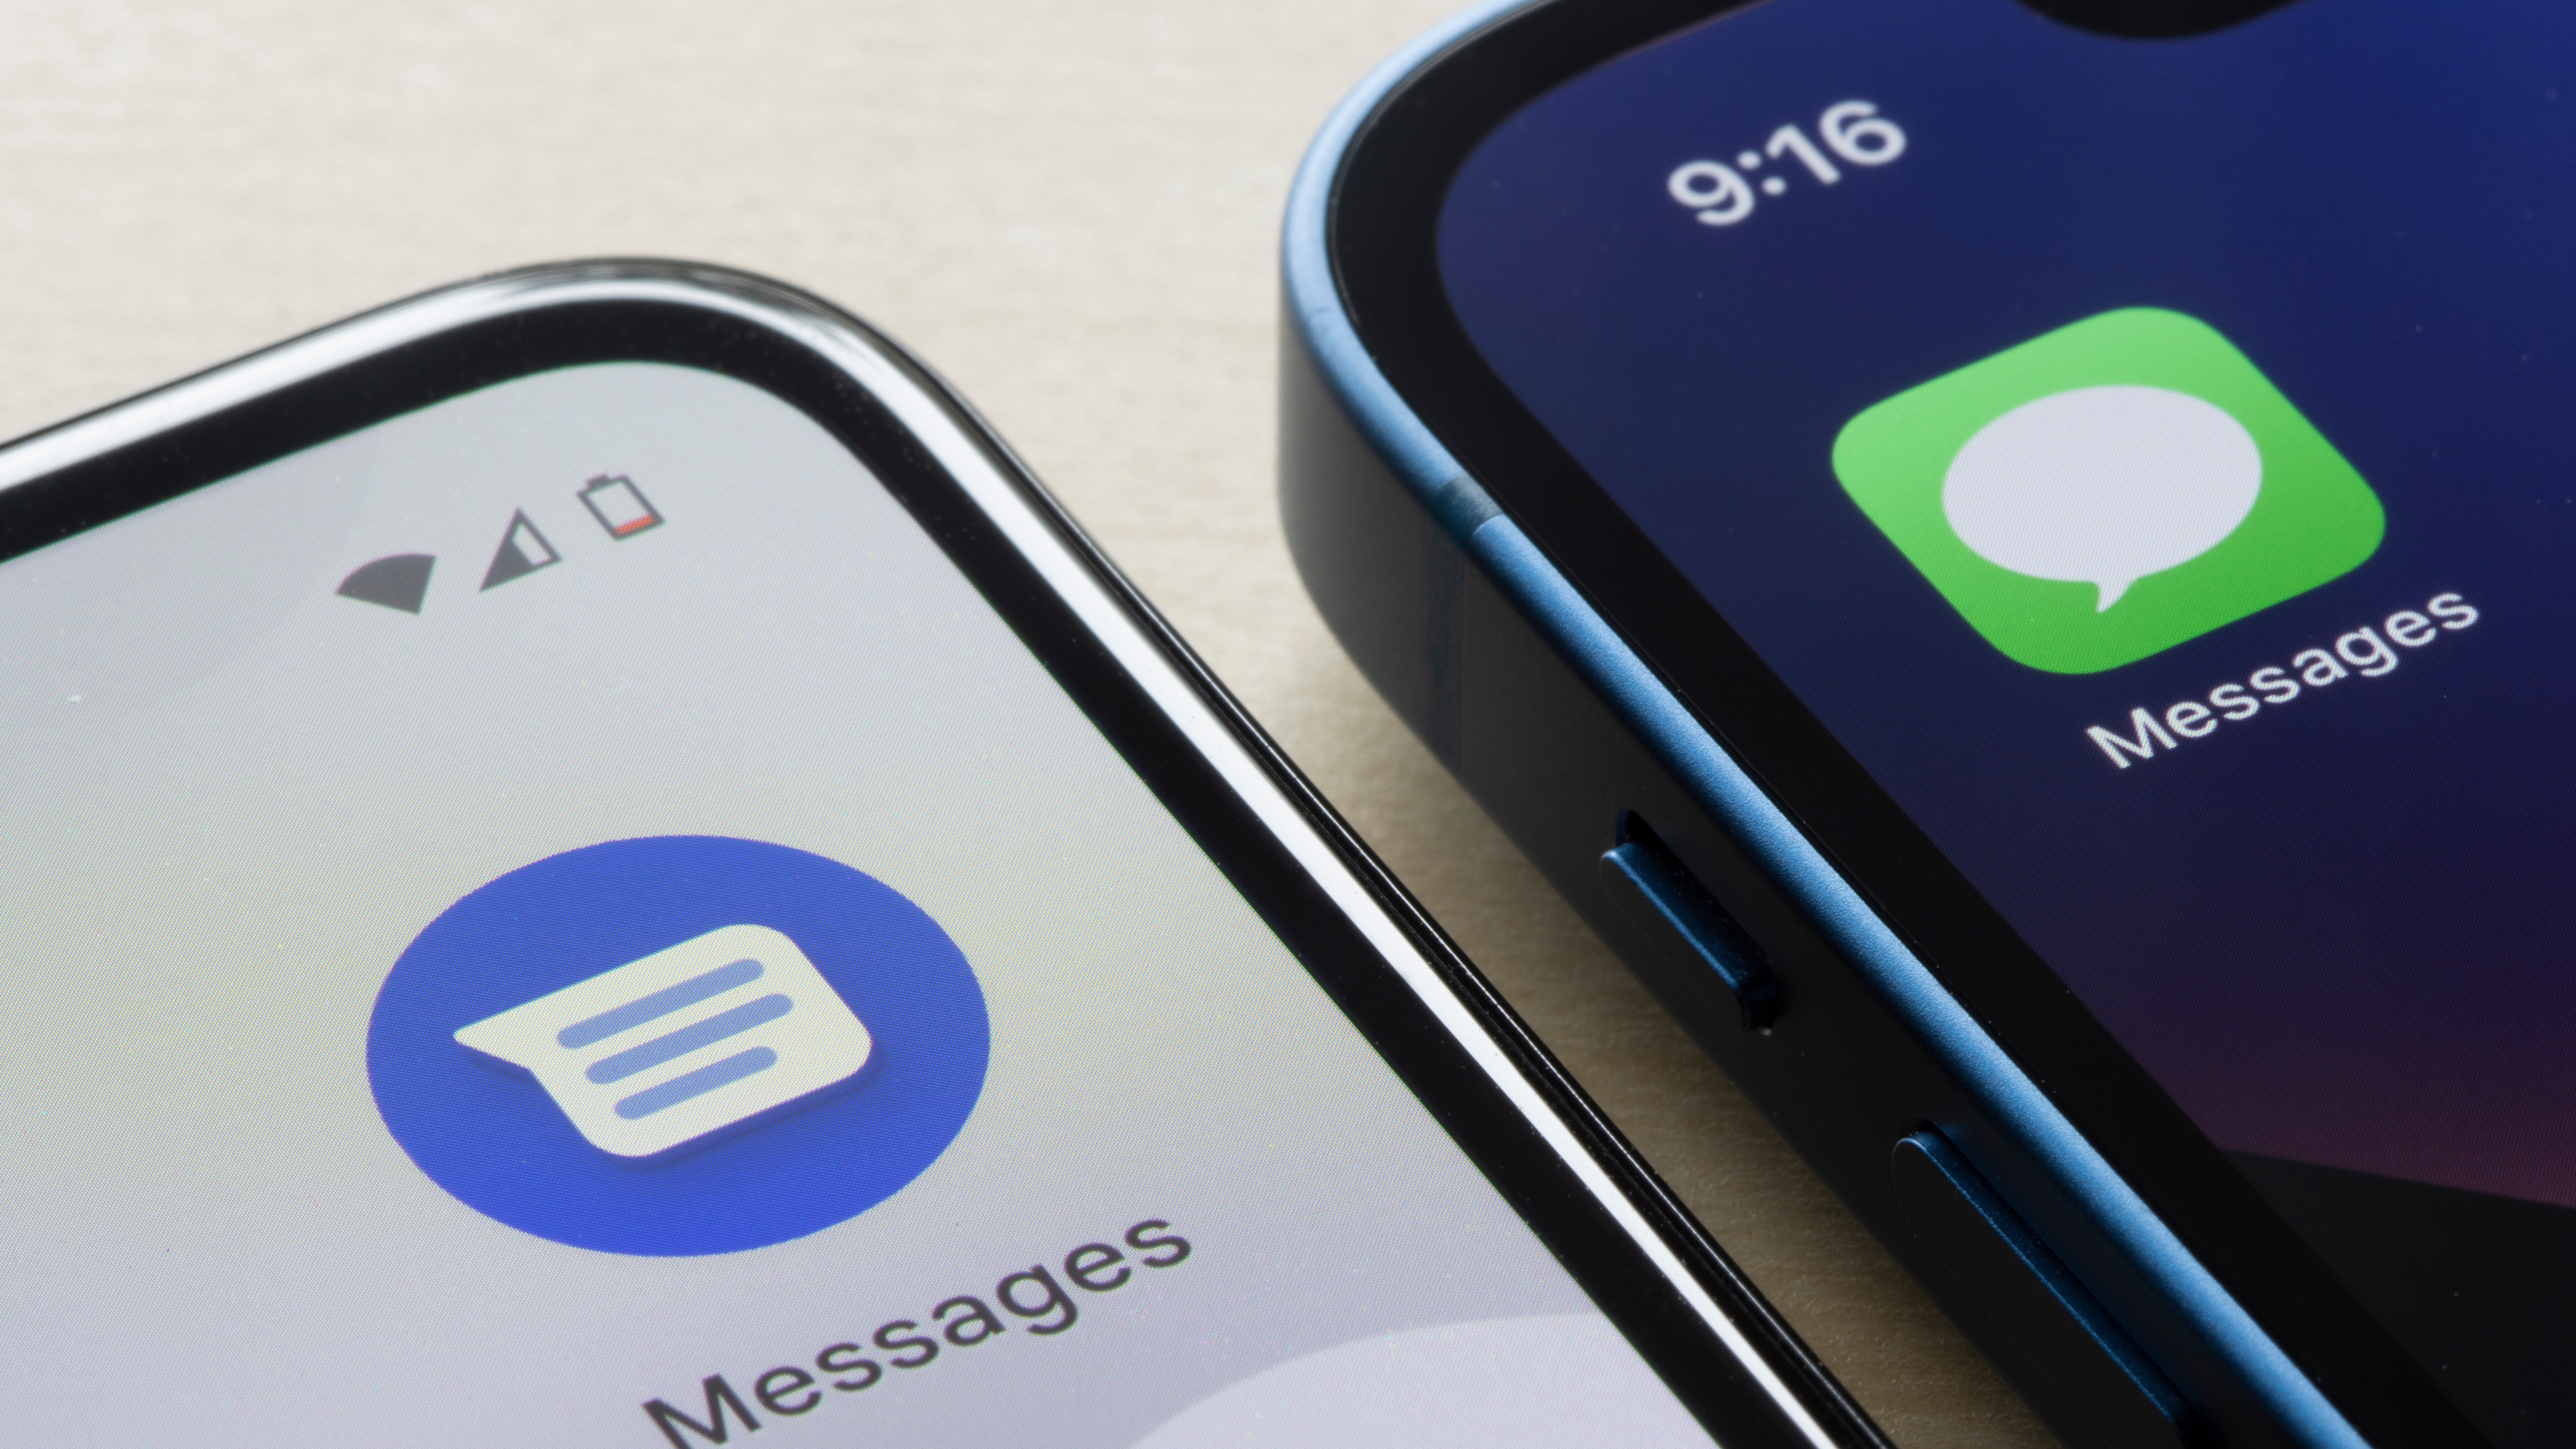 米国オレゴン州ポートランド - 2022 年 2 月 4 日: Google メッセージと Apple の iMessage アプリのアイコンが、それぞれ Google Pixel 4a スマートフォンと iPhone 13 mini に表示されます。 Android と iOS のコンセプト。